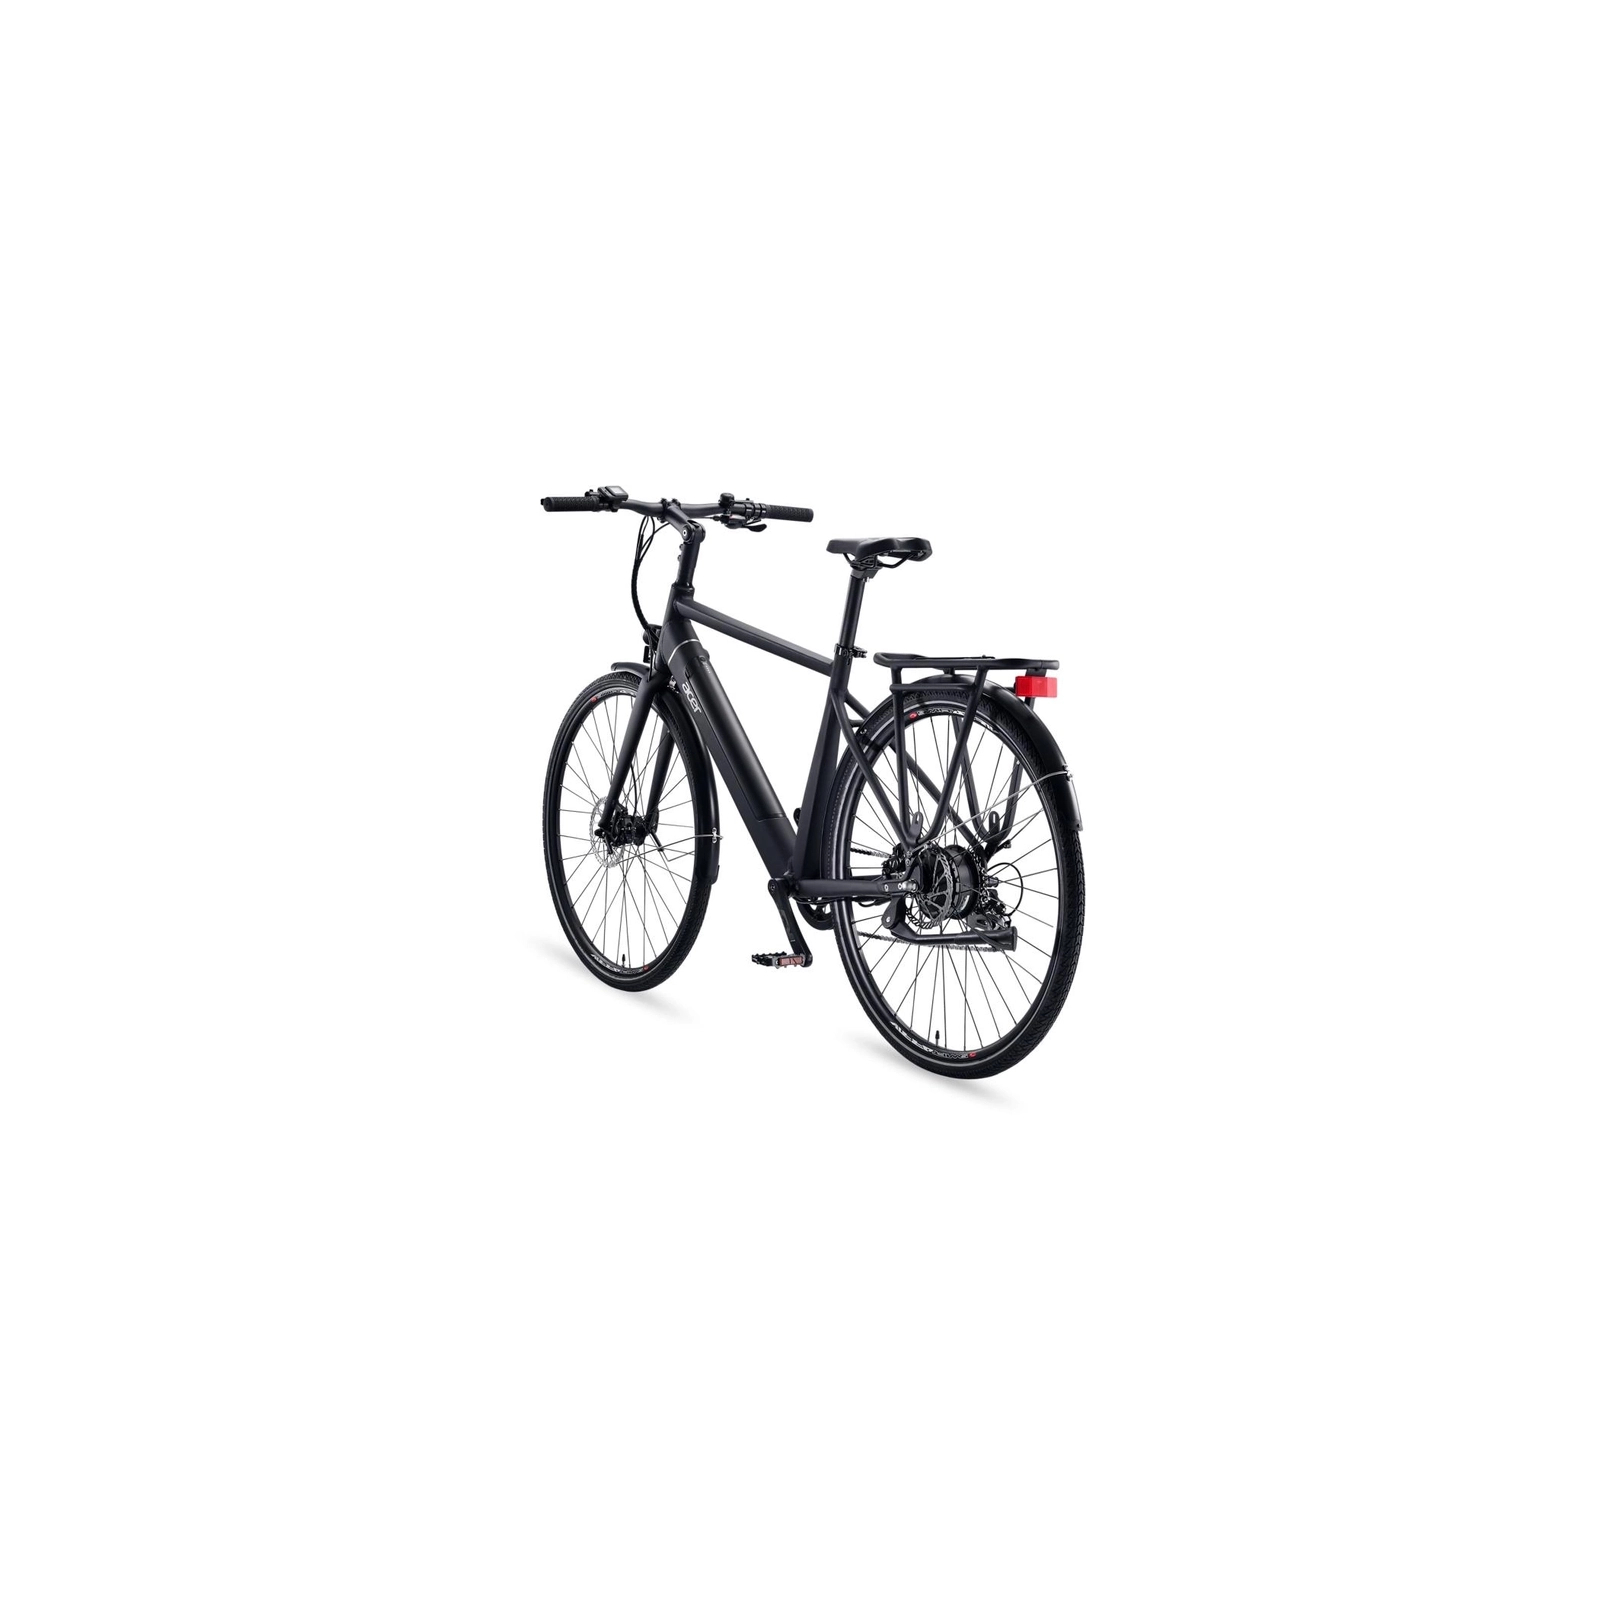 Електровелосипед Acer eUrban bike (GP.EBG11.001) зображення 5